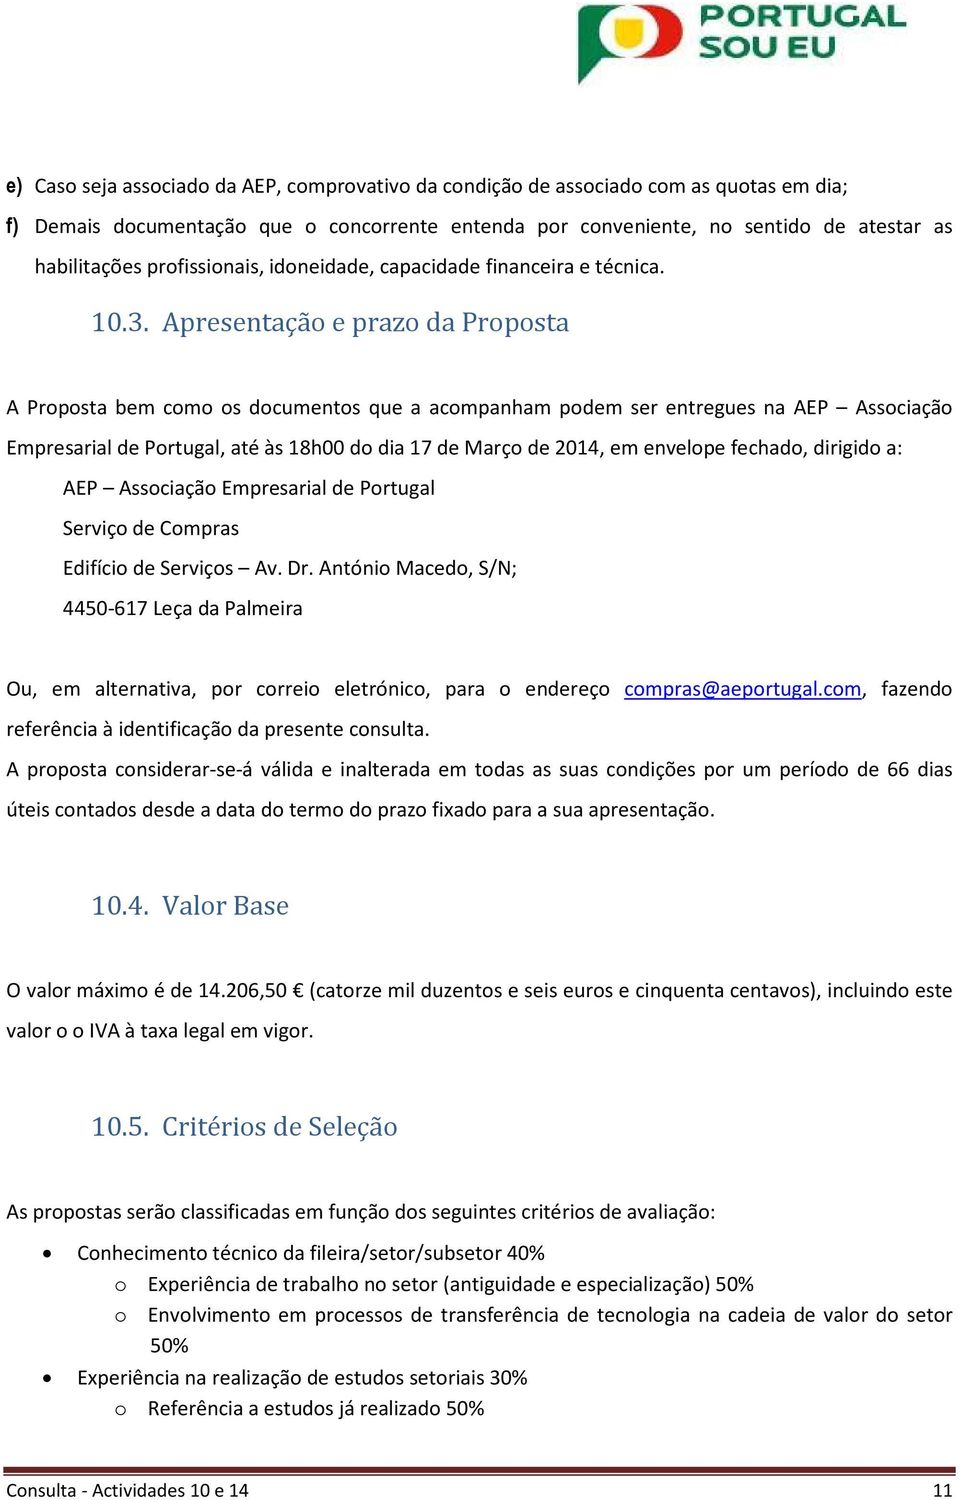 Apresentação e prazo da Proposta A Proposta bem como os documentos que a acompanham podem ser entregues na AEP Associação Empresarial de Portugal, até às 18h00 do dia 17 de Março de 2014, em envelope